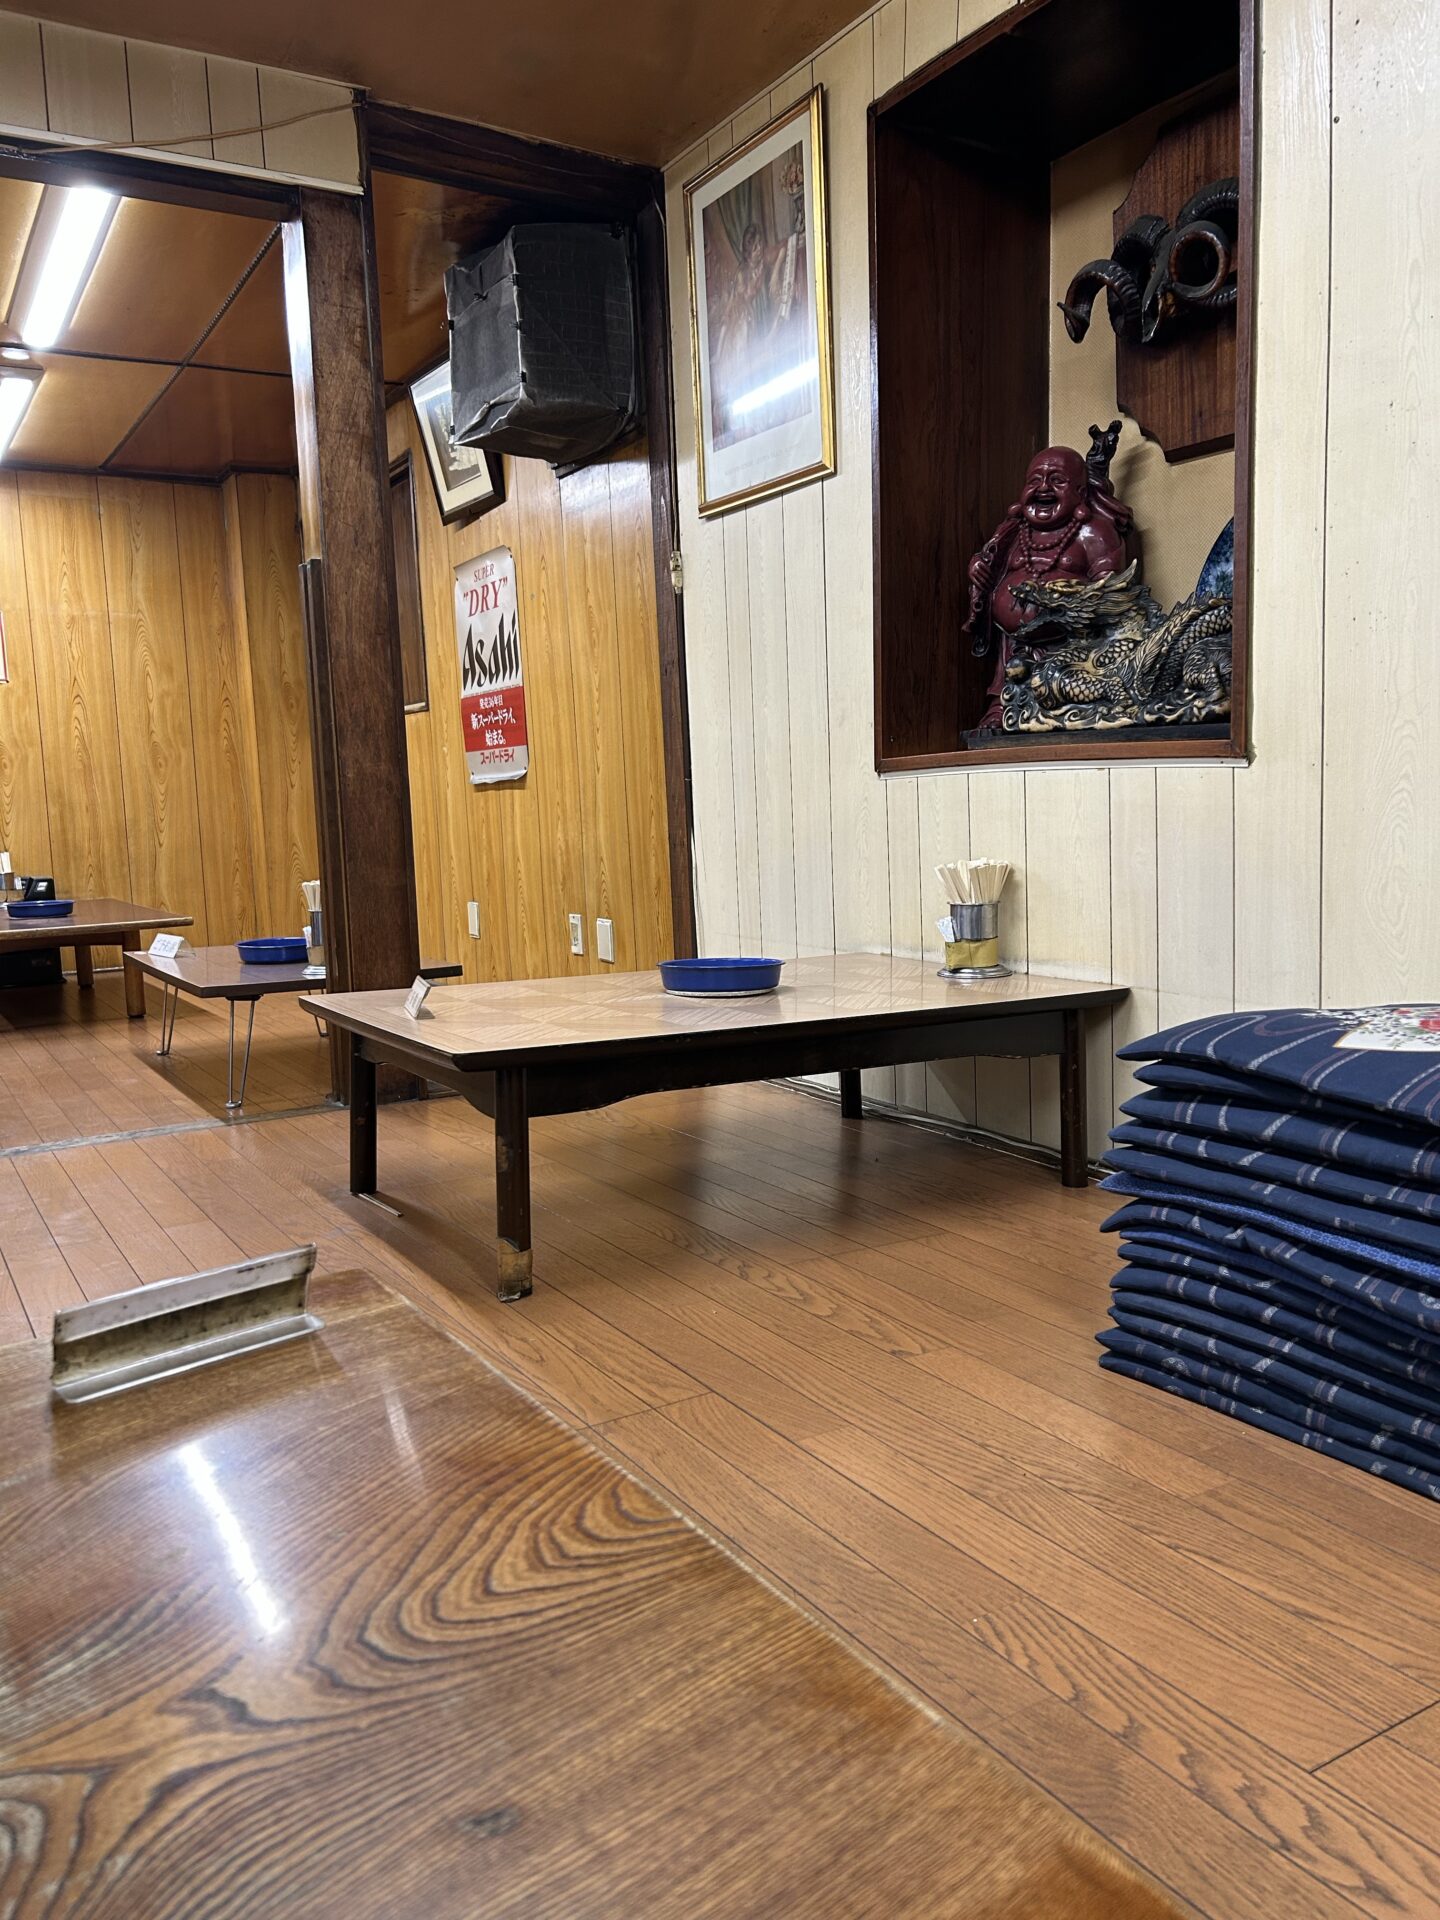 「元祖 京城屋」の小上がり席。板張りに座布団が懐かしい。